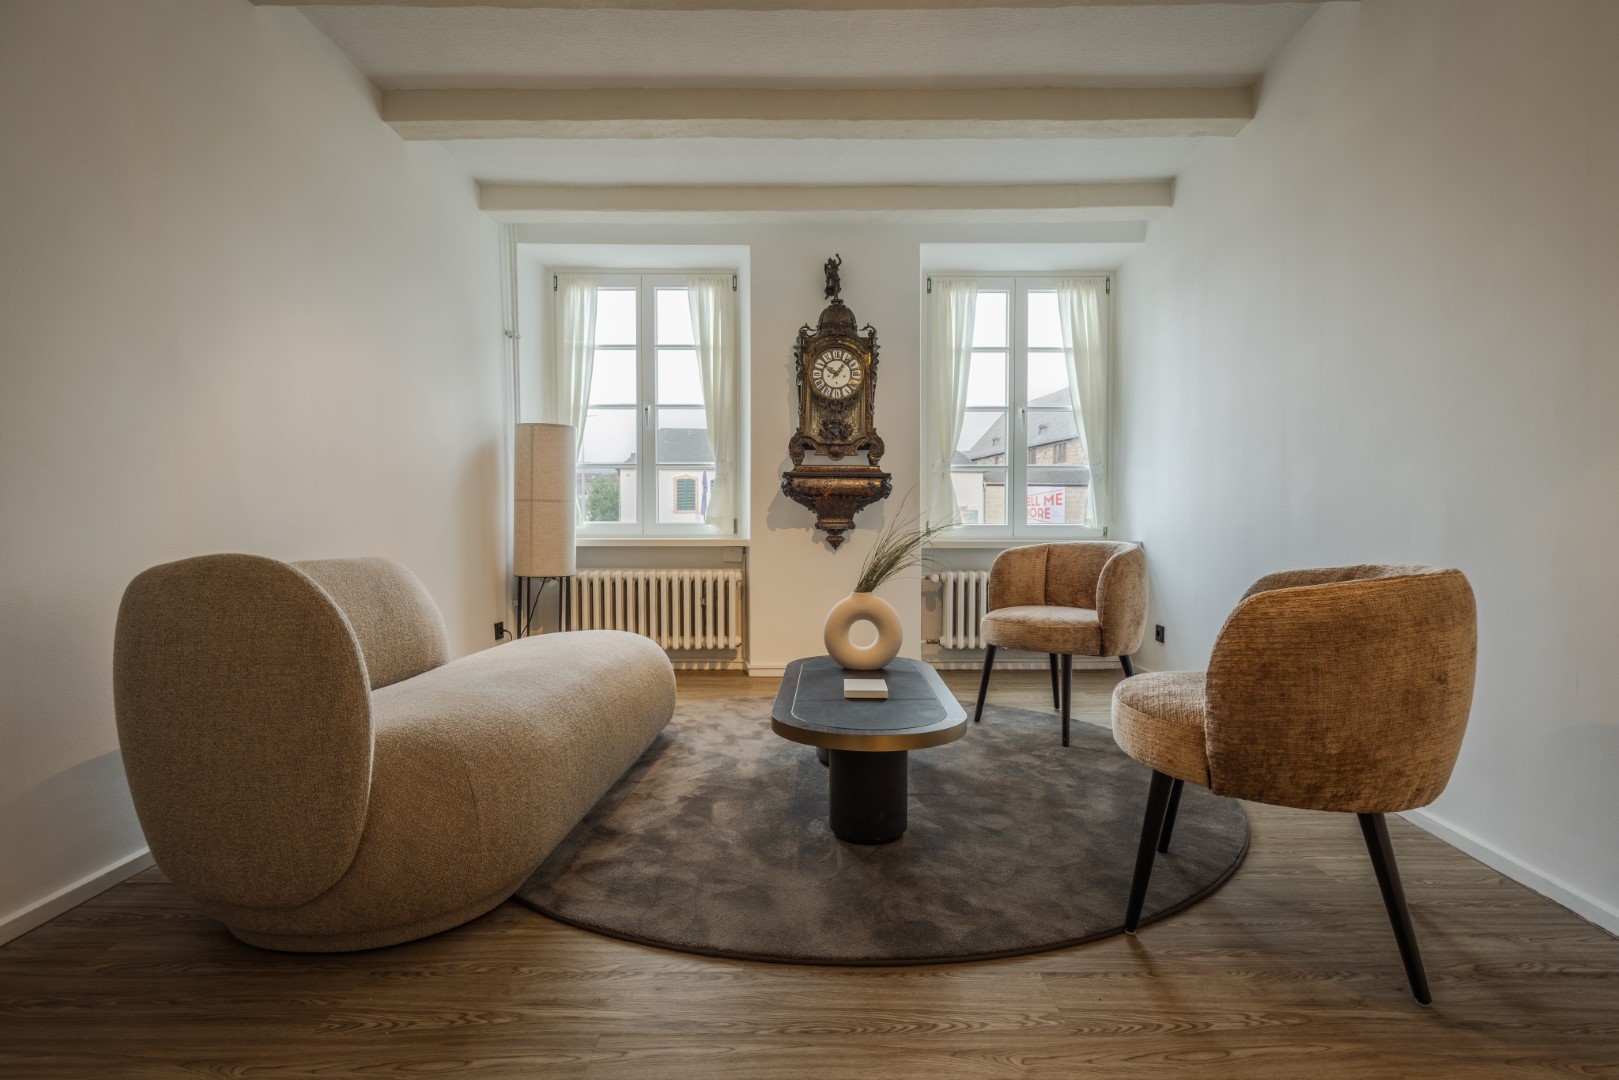 Lounge-Verkaufsbereich mit passenden Möbeln und eleganten Ladendesign